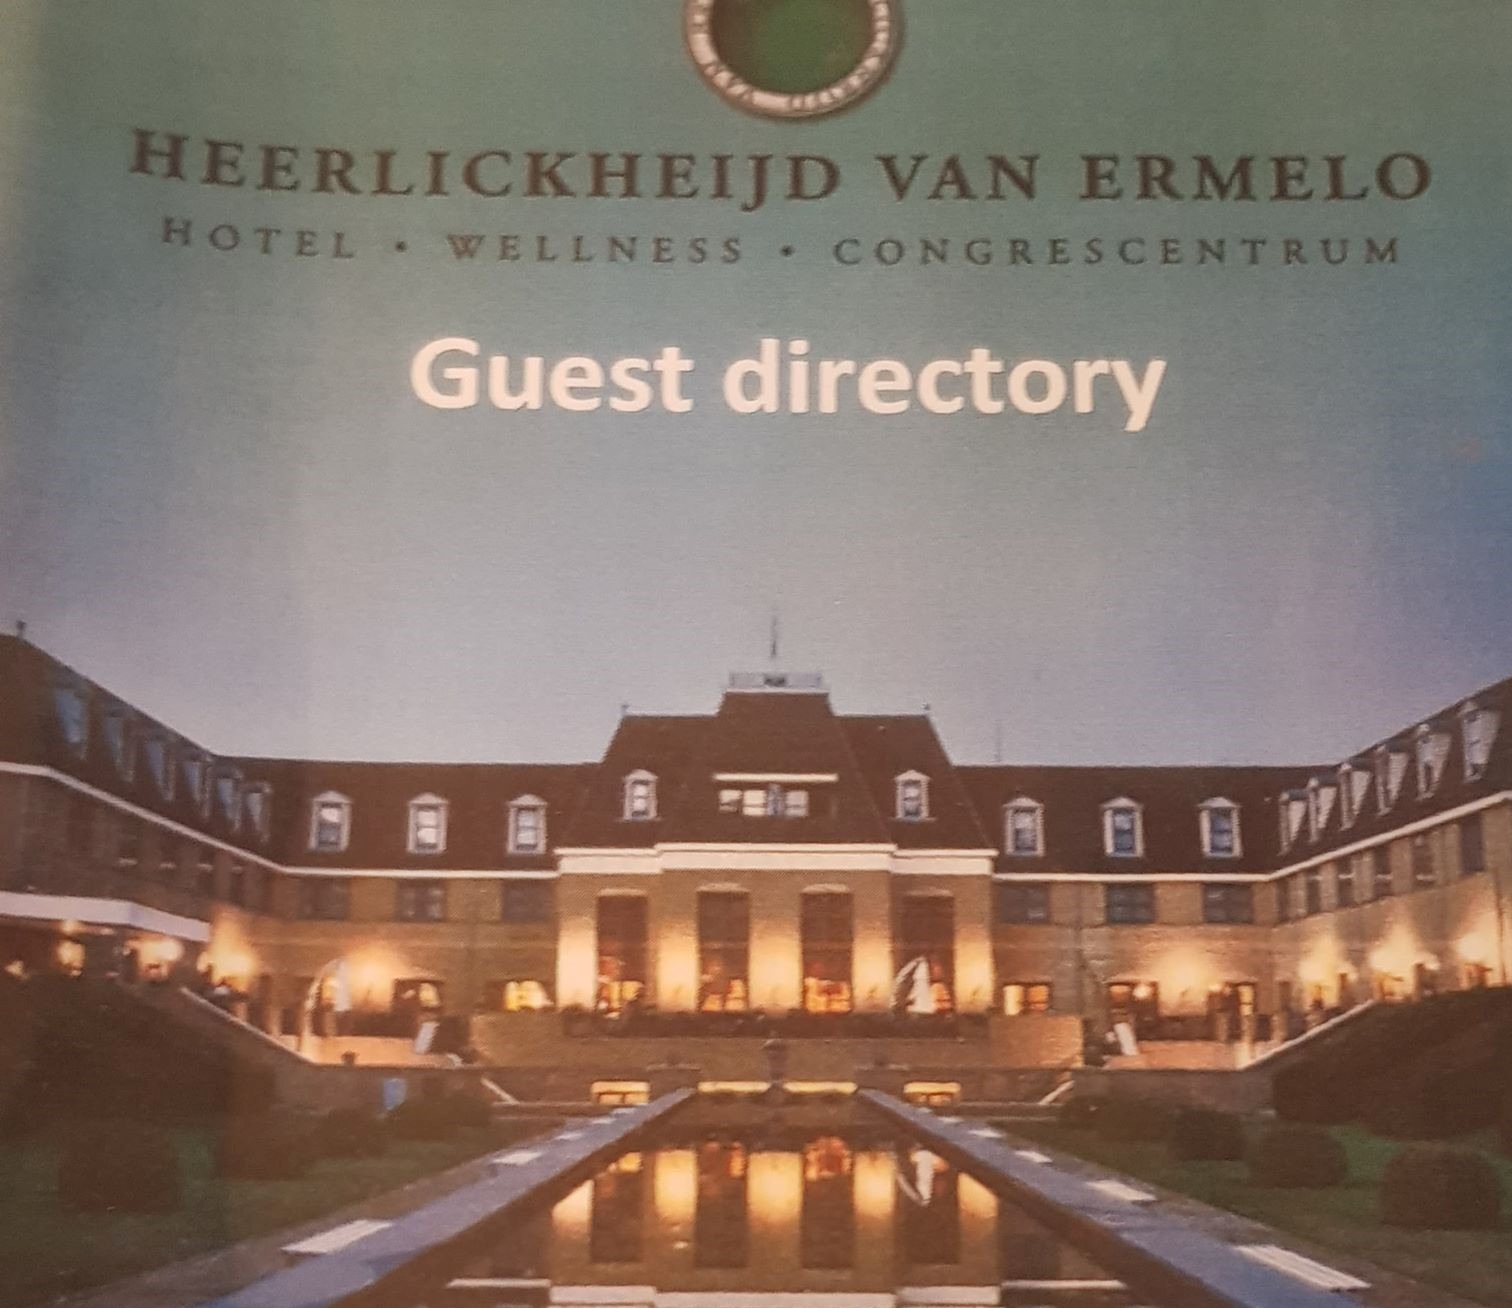 Birthday weekend in hotel “De Heerlickheijd” Ermelo, the Netherlands.